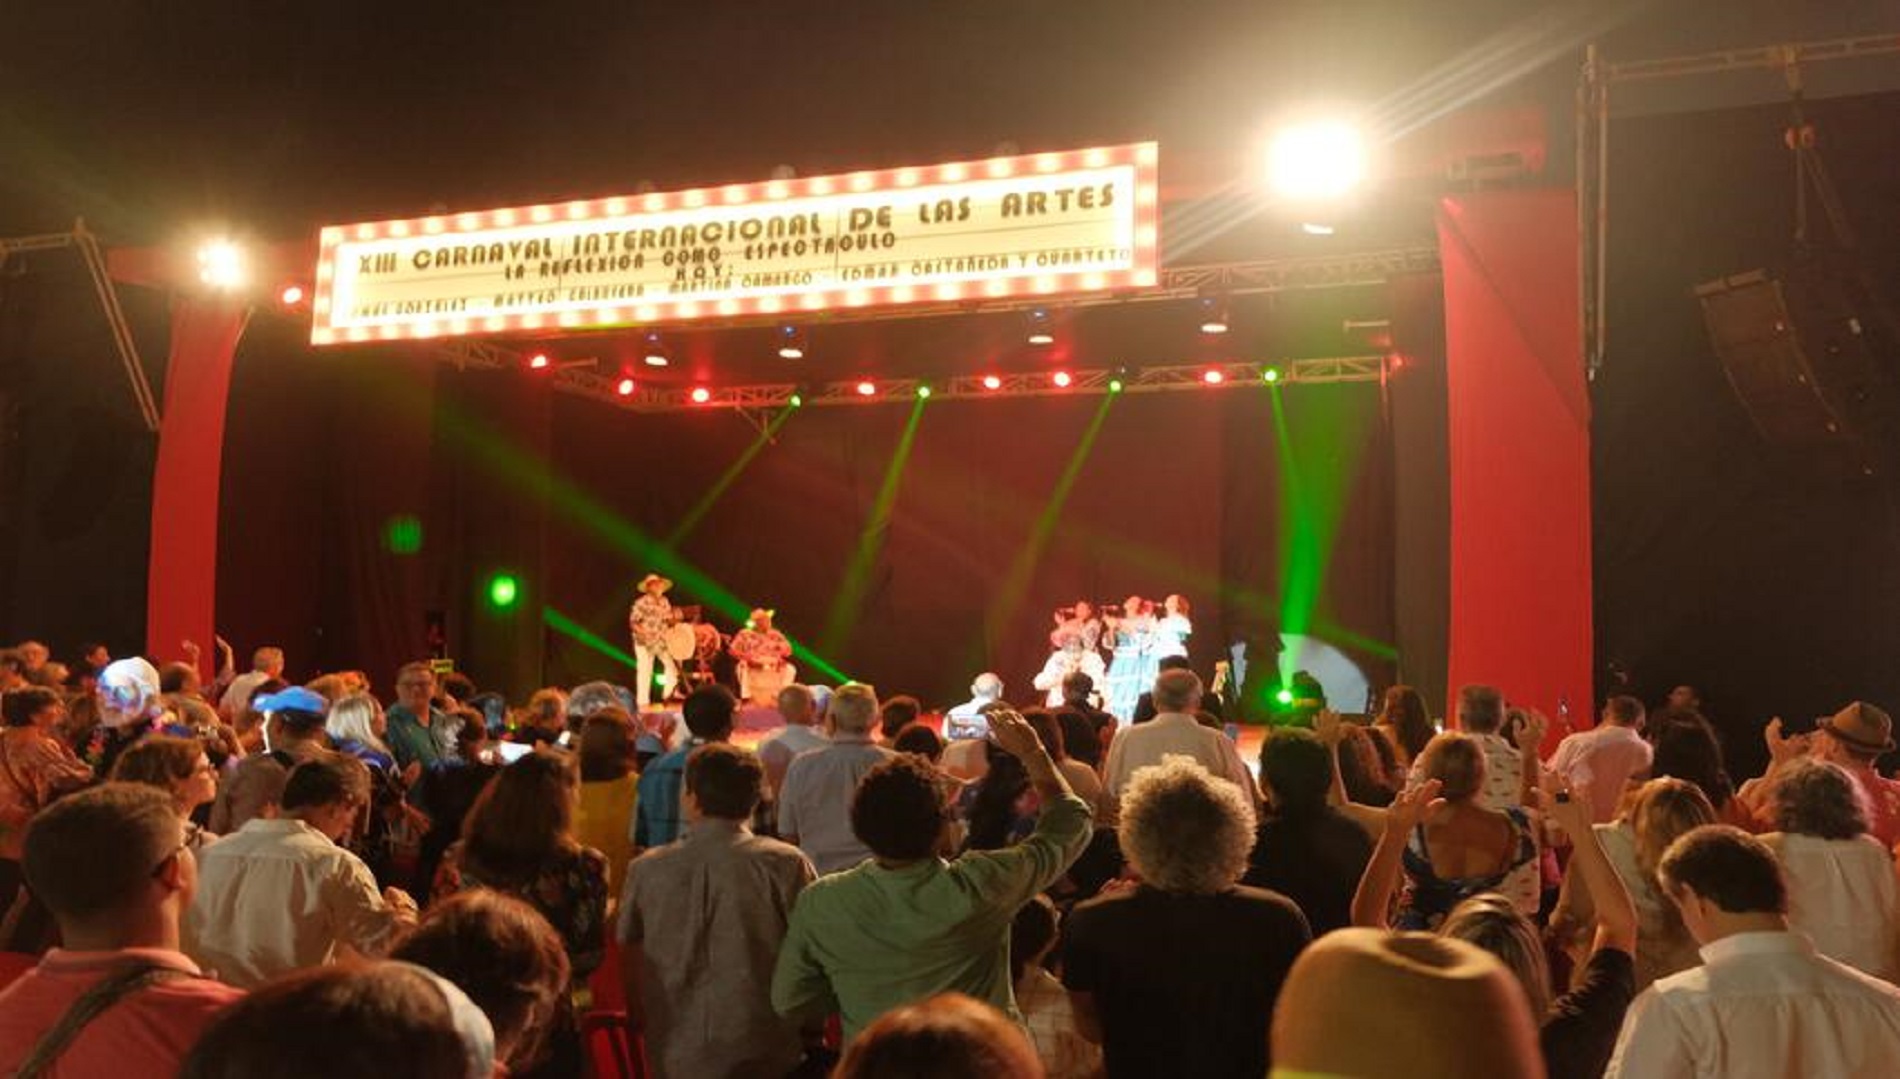 El anuncio se realizó luego del aplazamiento hasta marzo del Carnaval de Barranquilla